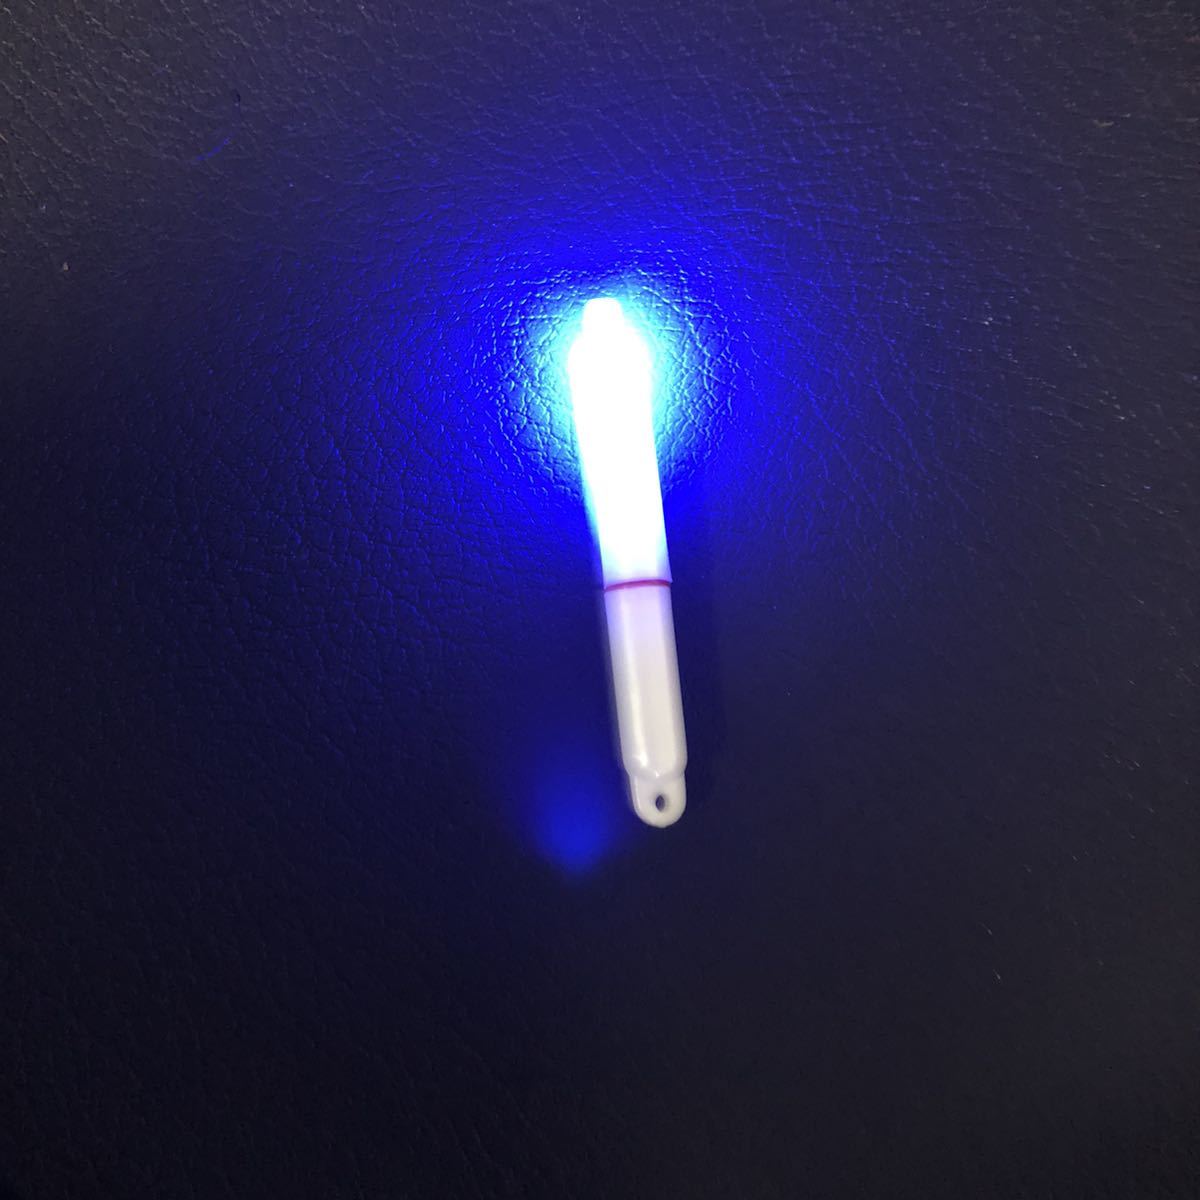  электрический поплавок химический источник света LED высокая яркость 75S синий blue 435 батарейка есть водонепроницаемый аккумулятор . замена возможен 75 размер 75 размер сборник рыба длинный меч рыба ржавчина ki